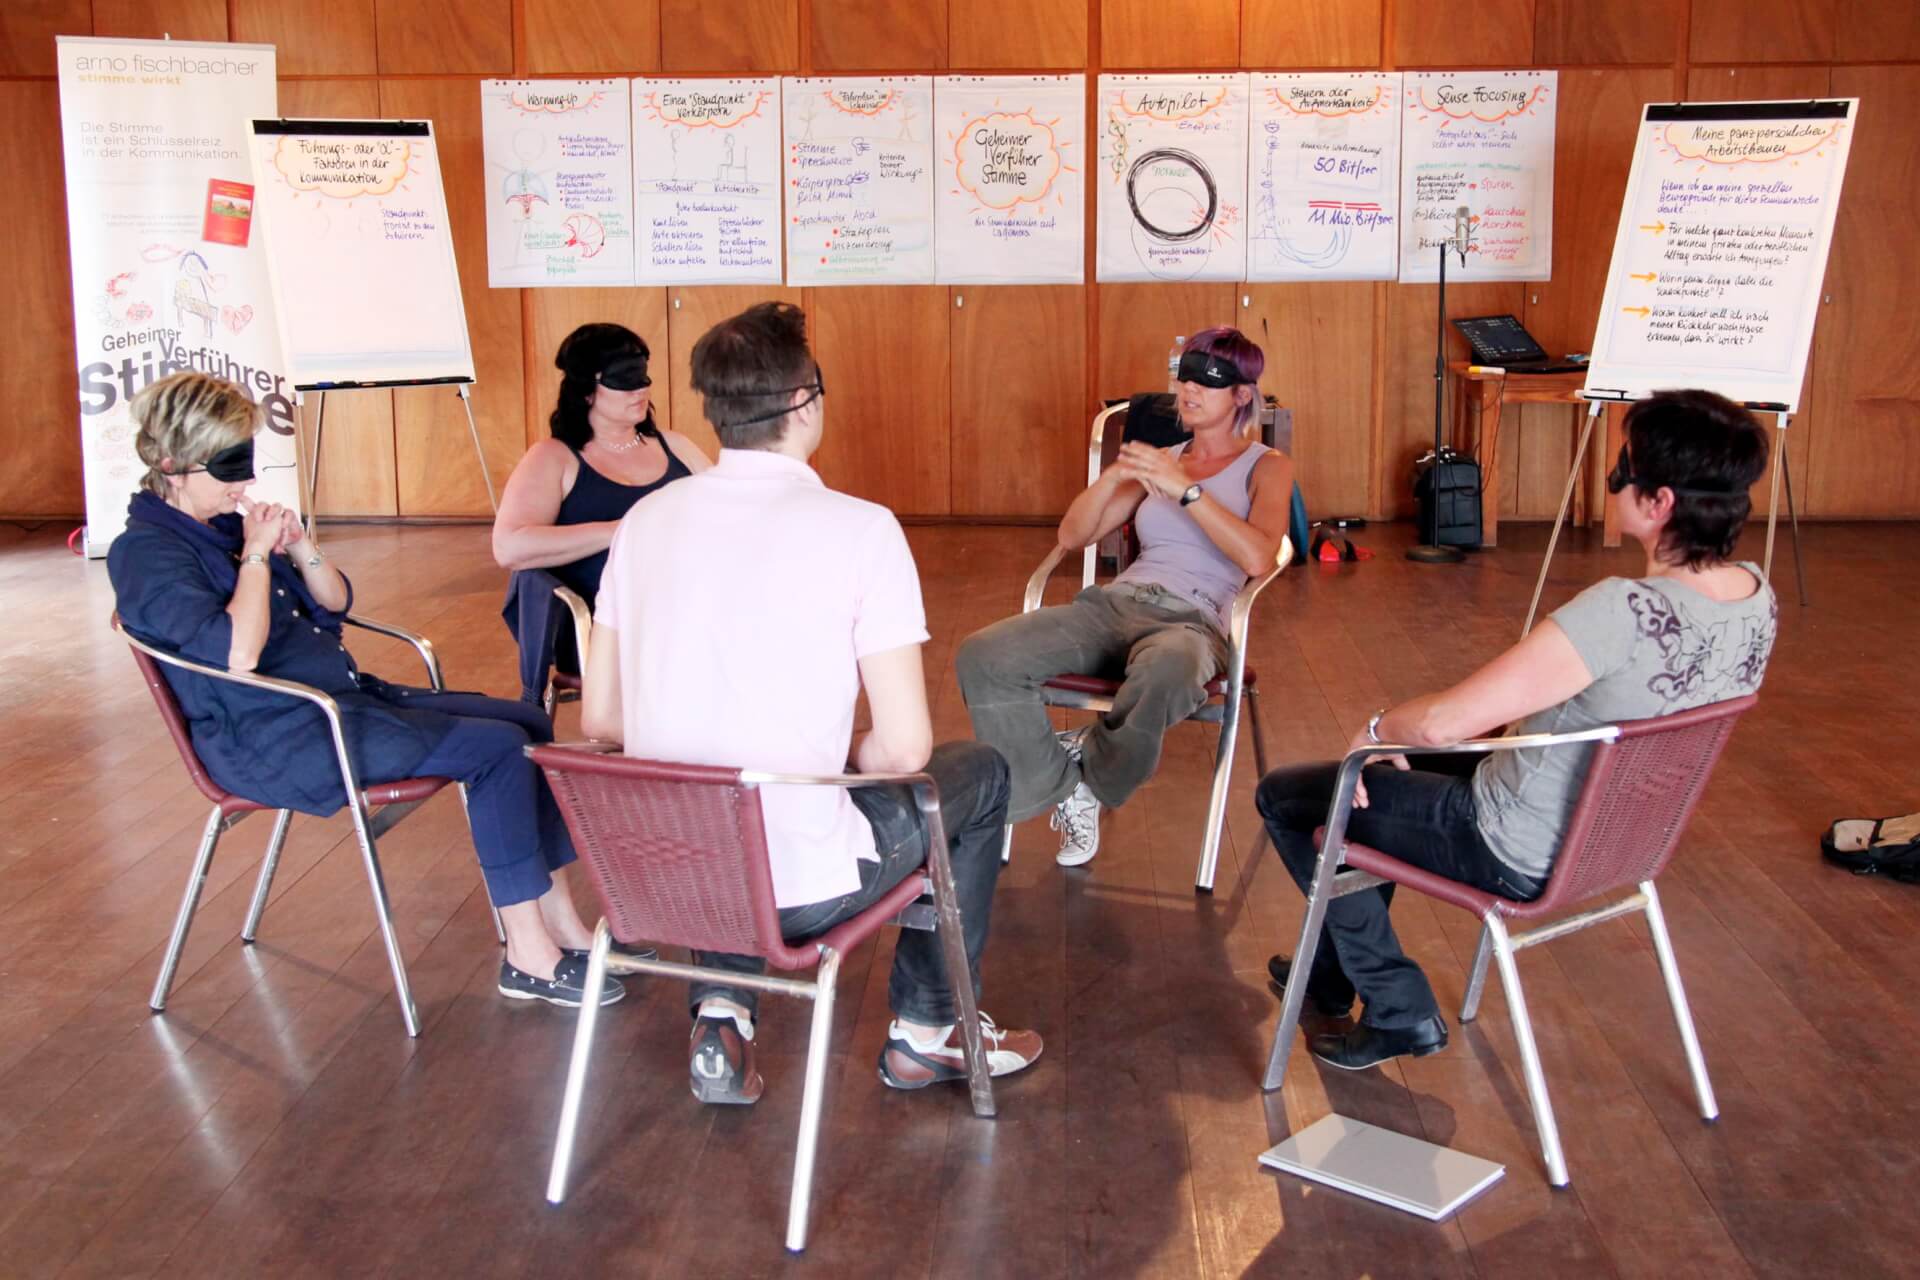 Fünf Erwachsene sitzen auf Stühlen im Kreis, einer fungiert als Sprecher. Sie diskutieren in einem hell erleuchteten Raum, um sie herum sind Papiere und Whiteboards voller Notizen verteilt.